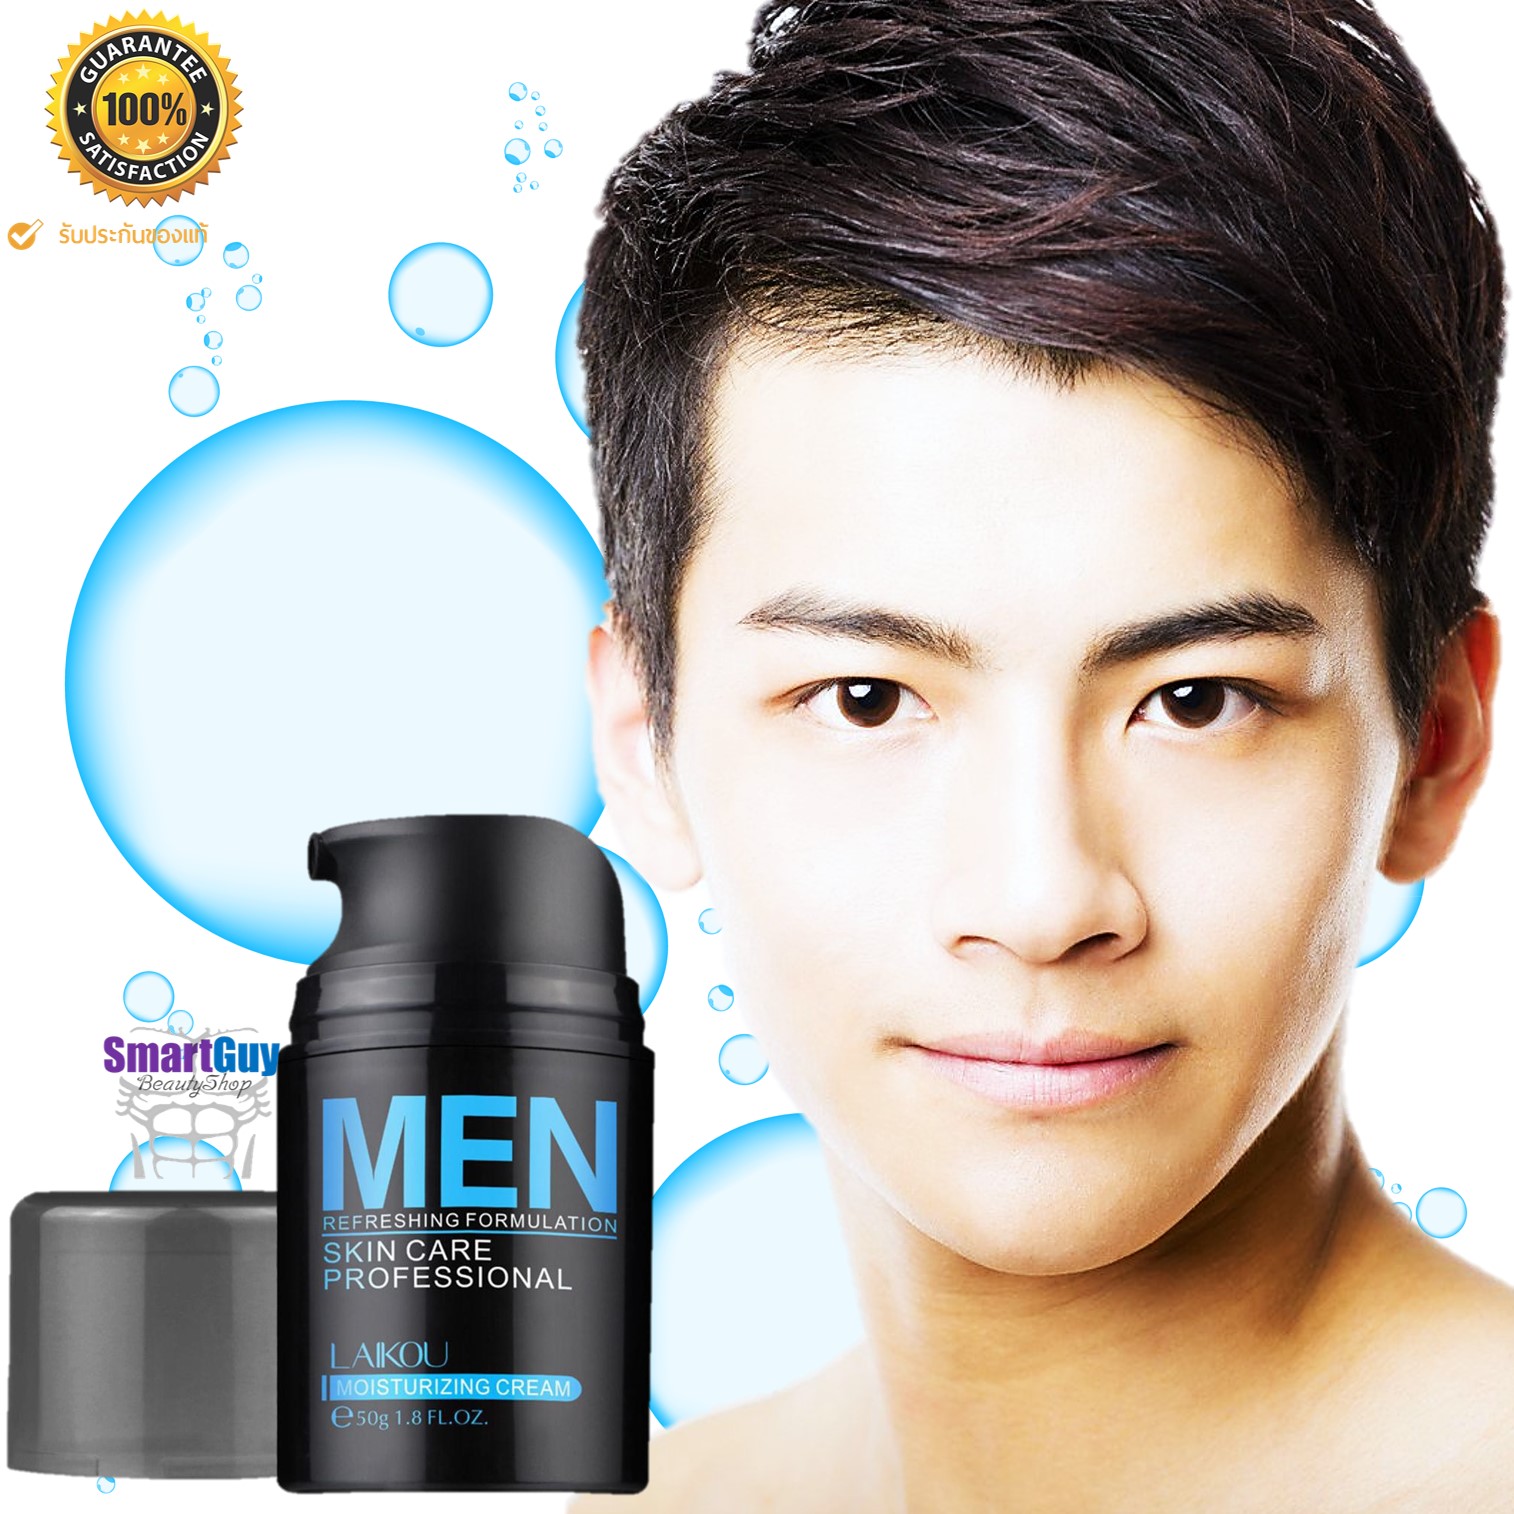 ครีมมอยซ์เจอร์ไรเซอร์สูตรพิเศษสำหรับผิวหน้าผู้ชาย  LAIKOU Men Refreshing Formulation Skin Care Professional Moisturizing Cream 50g.